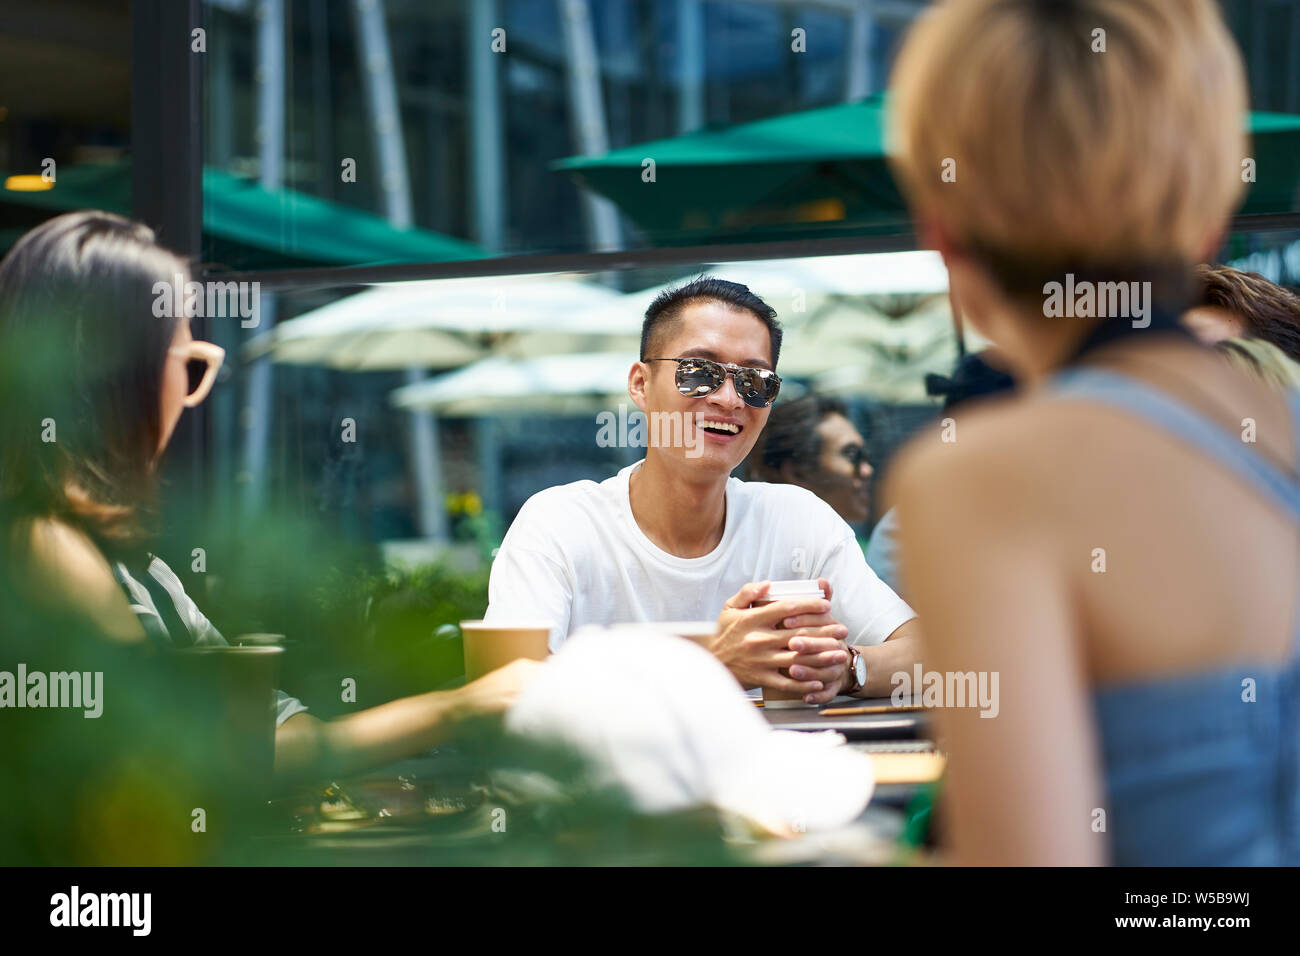 Les jeunes gens d'Asie man and woman relaxing bavarder dans un café en plein air Banque D'Images